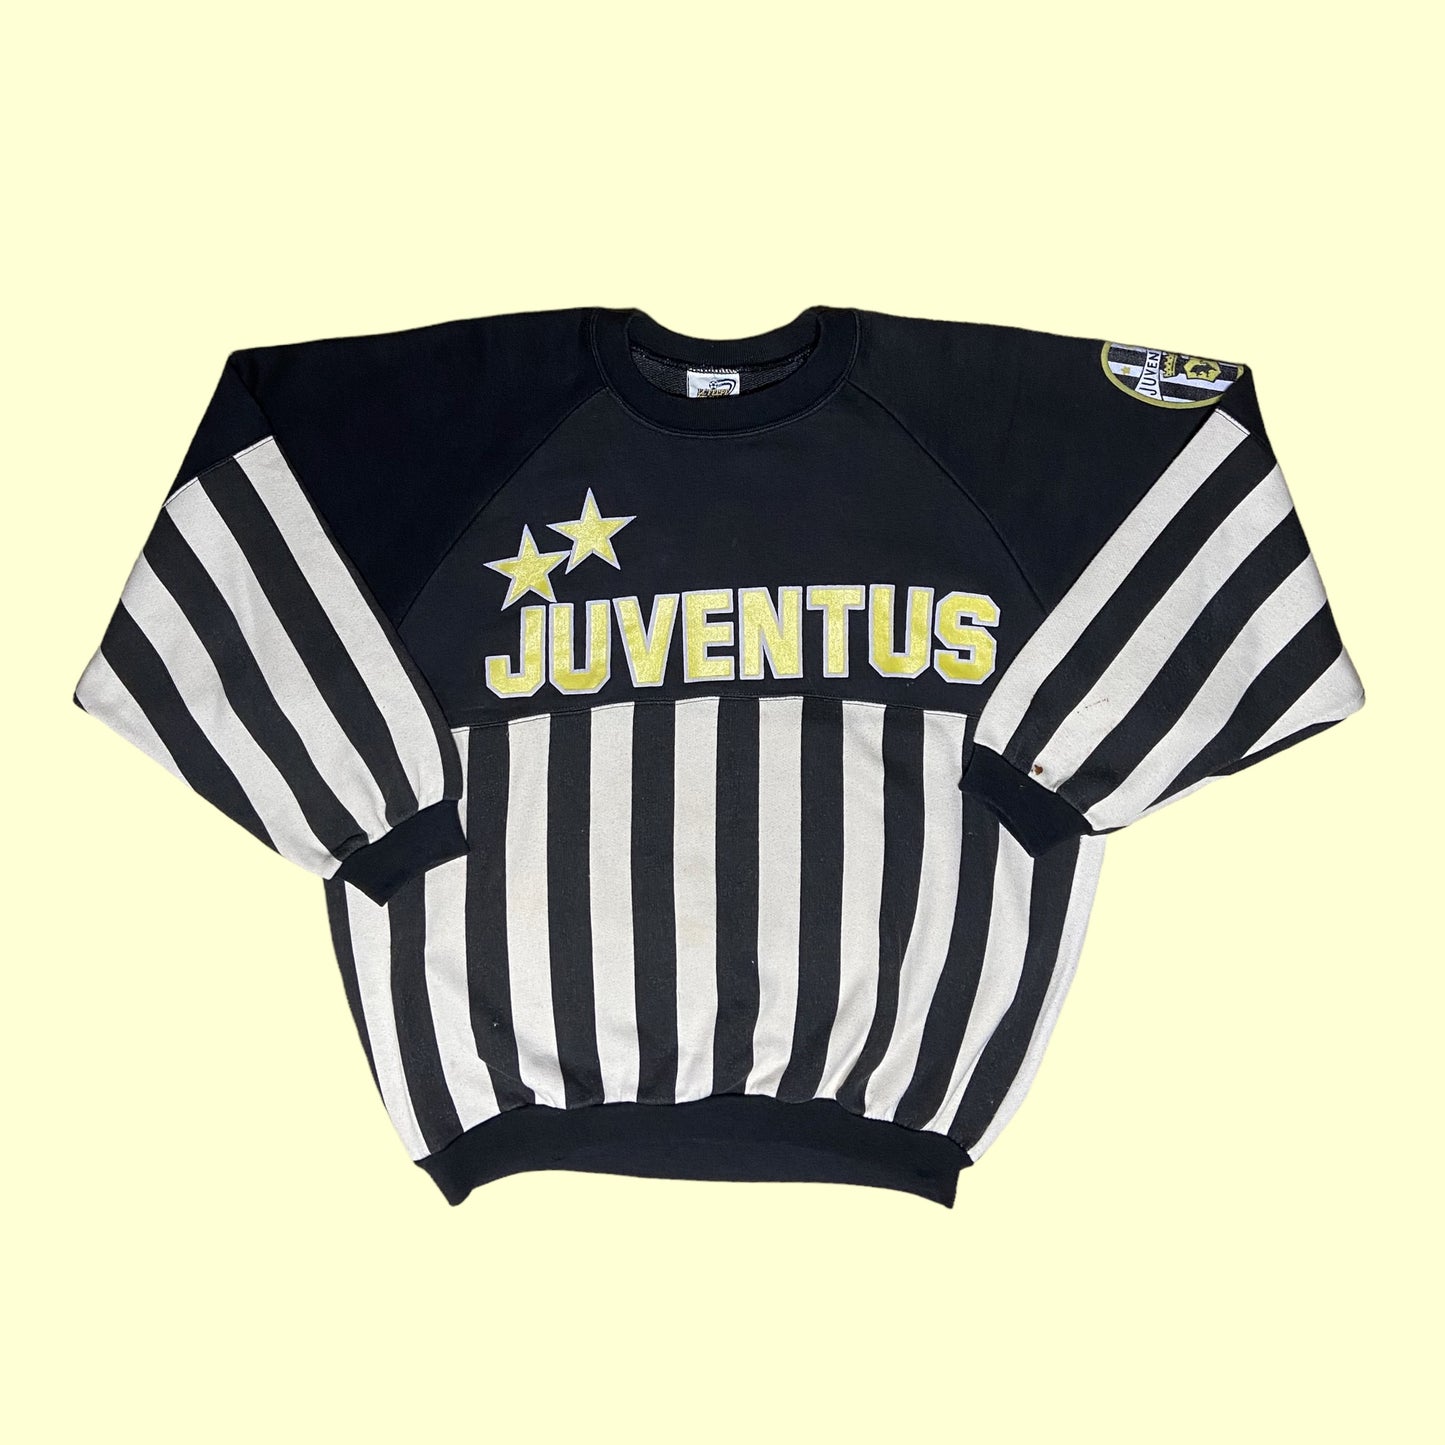 Vintage 90s Juventus sweater - L